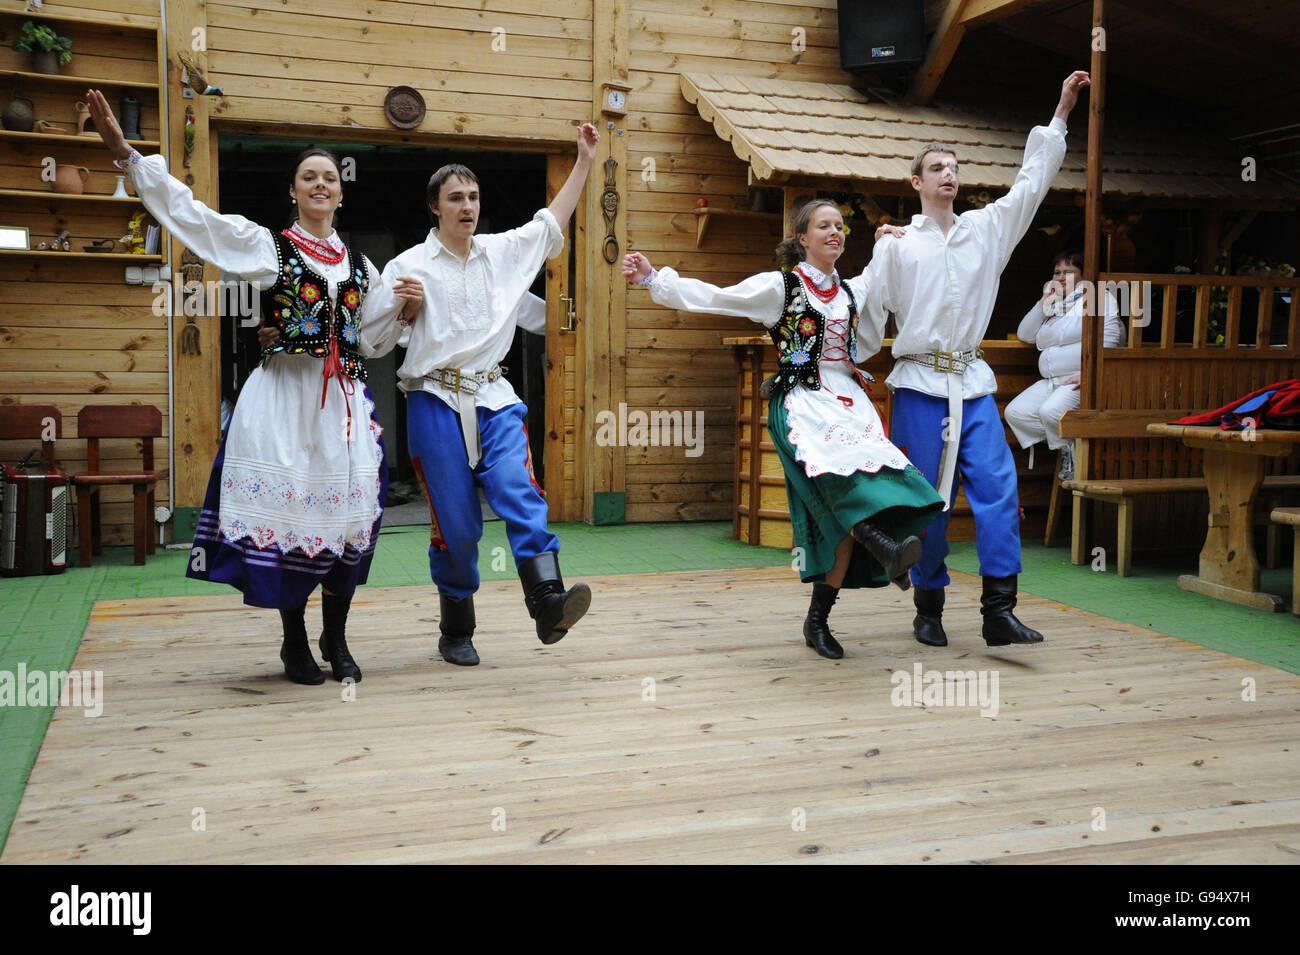 Danseuse folklorique en costumes traditionnels, restaurant, Marengo, Olsztyn Warmian-Masurian, Pologne / Mazurie Banque D'Images